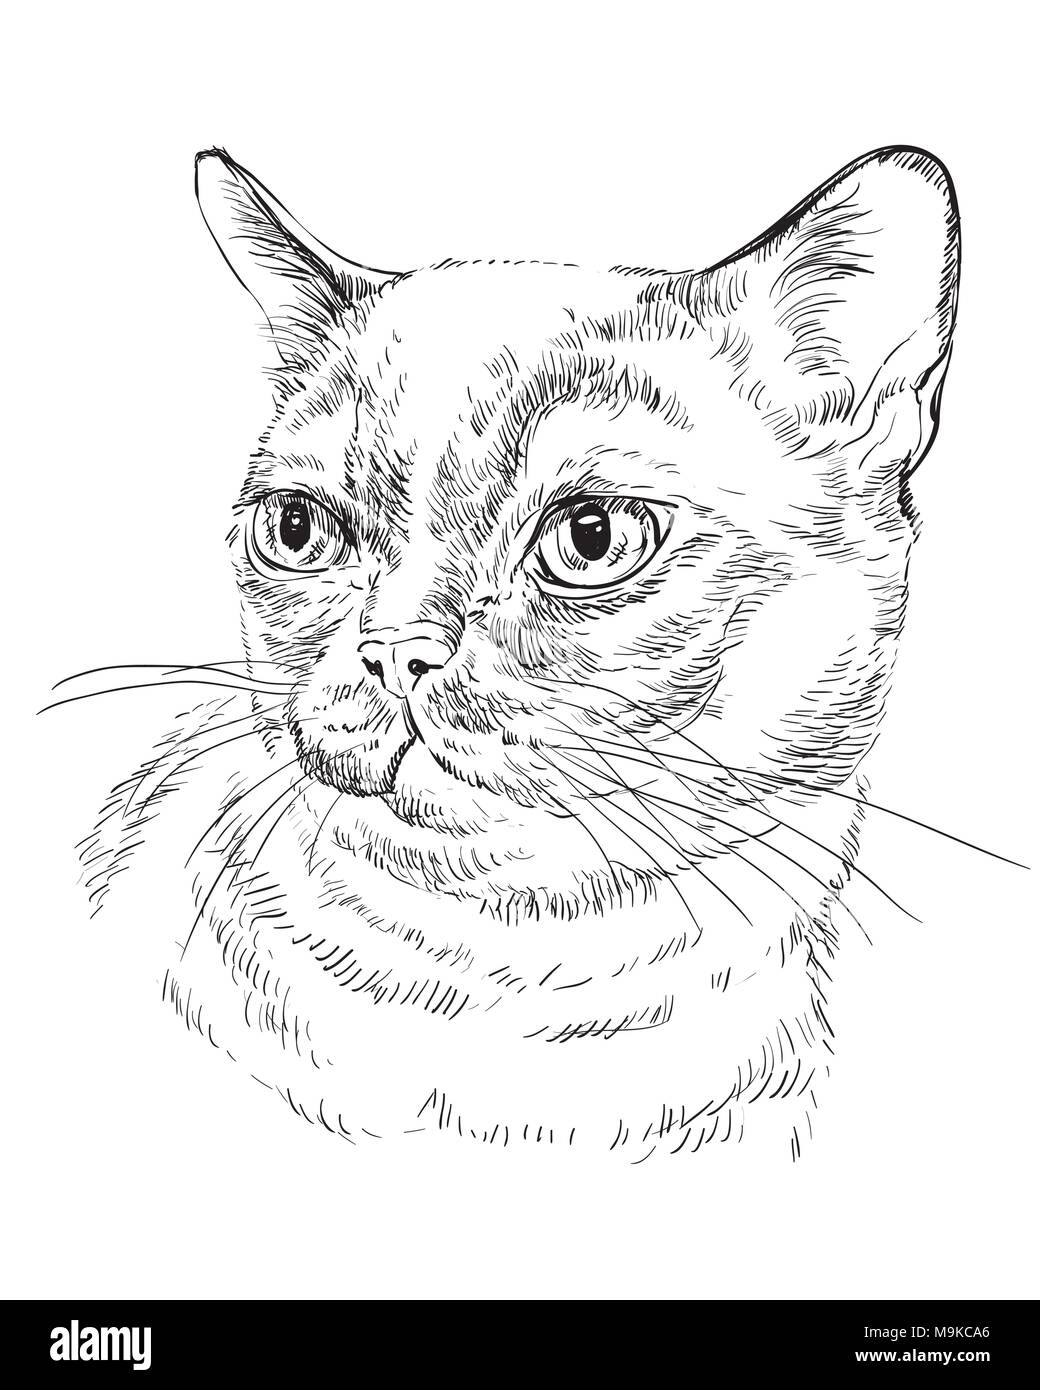 Vektor Kontur monochrome Portrait von neugierig Burmese Cat in der Farbe schwarz. Hand Zeichnung Abbildung isoliert auf weißem Hintergrund Stock Vektor